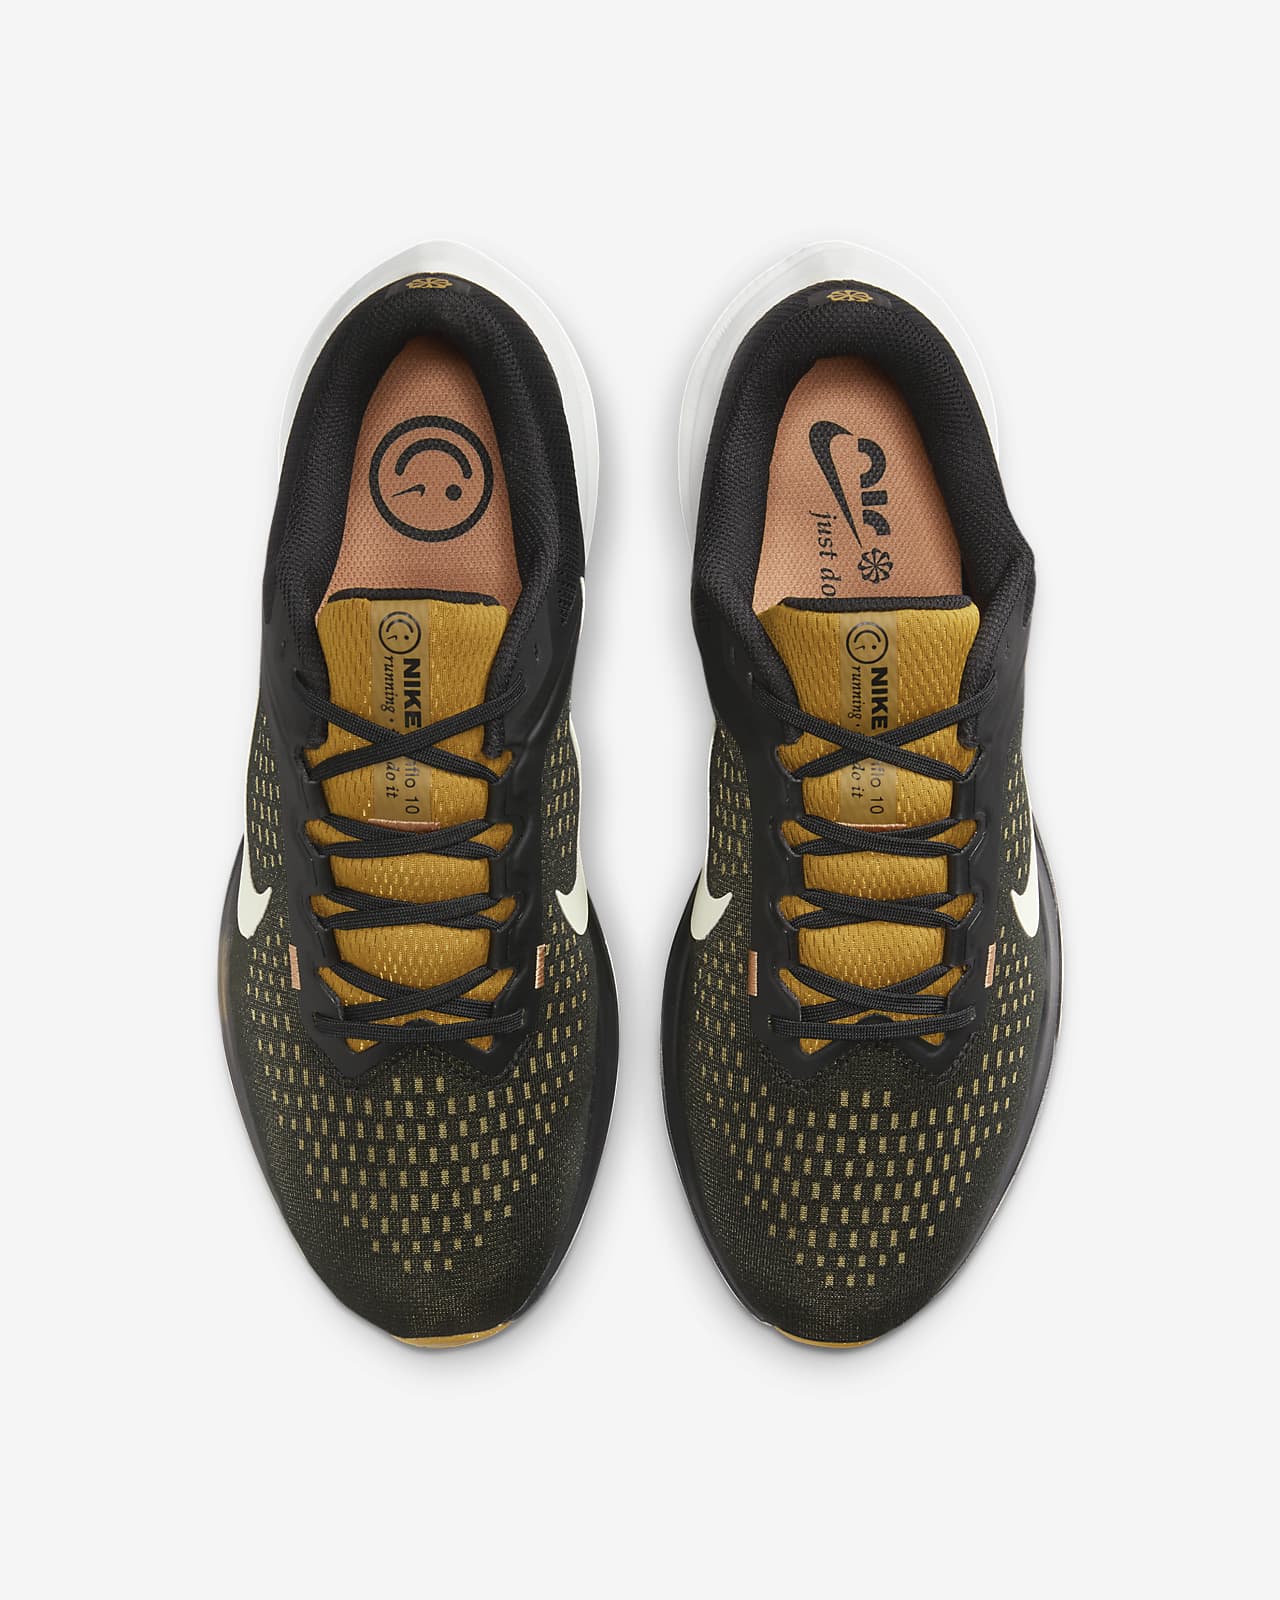 Nike Winflo 10 Zapatillas de running para asfalto (extraanchas